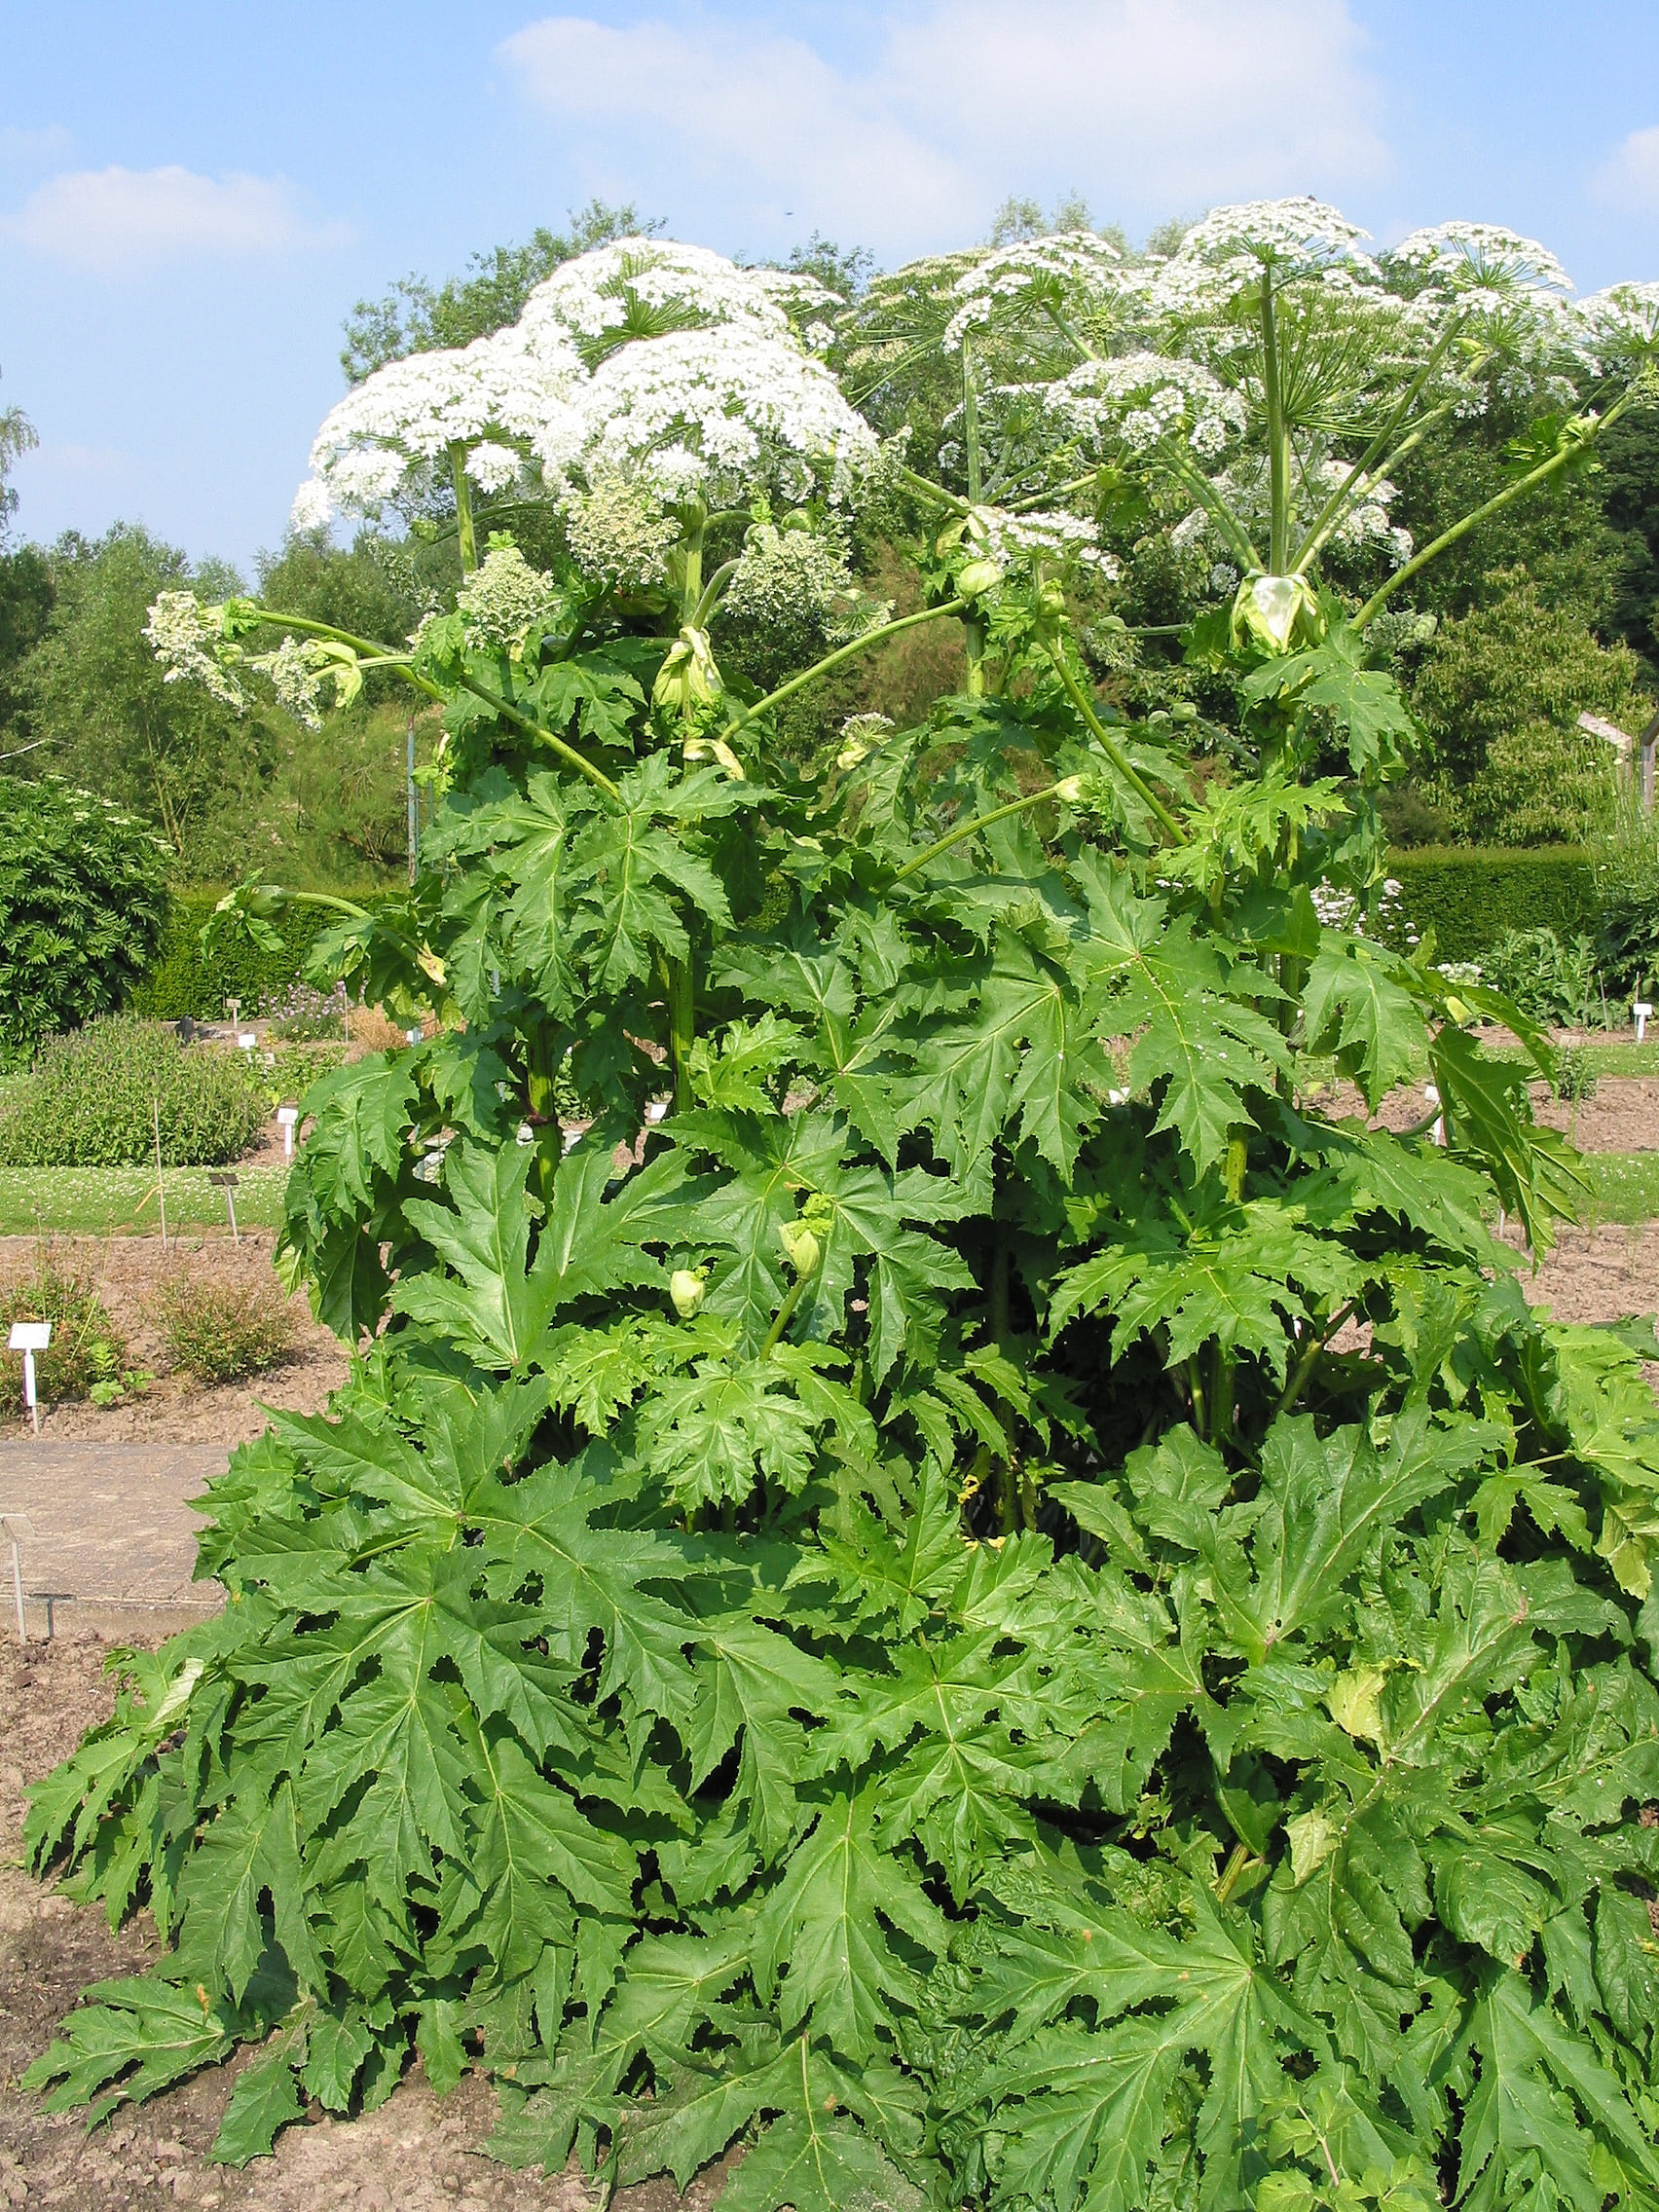 Heracleum mantegazzianum, la pianta molto pericolosa che puoi trovare sui sentieri nei boschi e lungo i fiumi